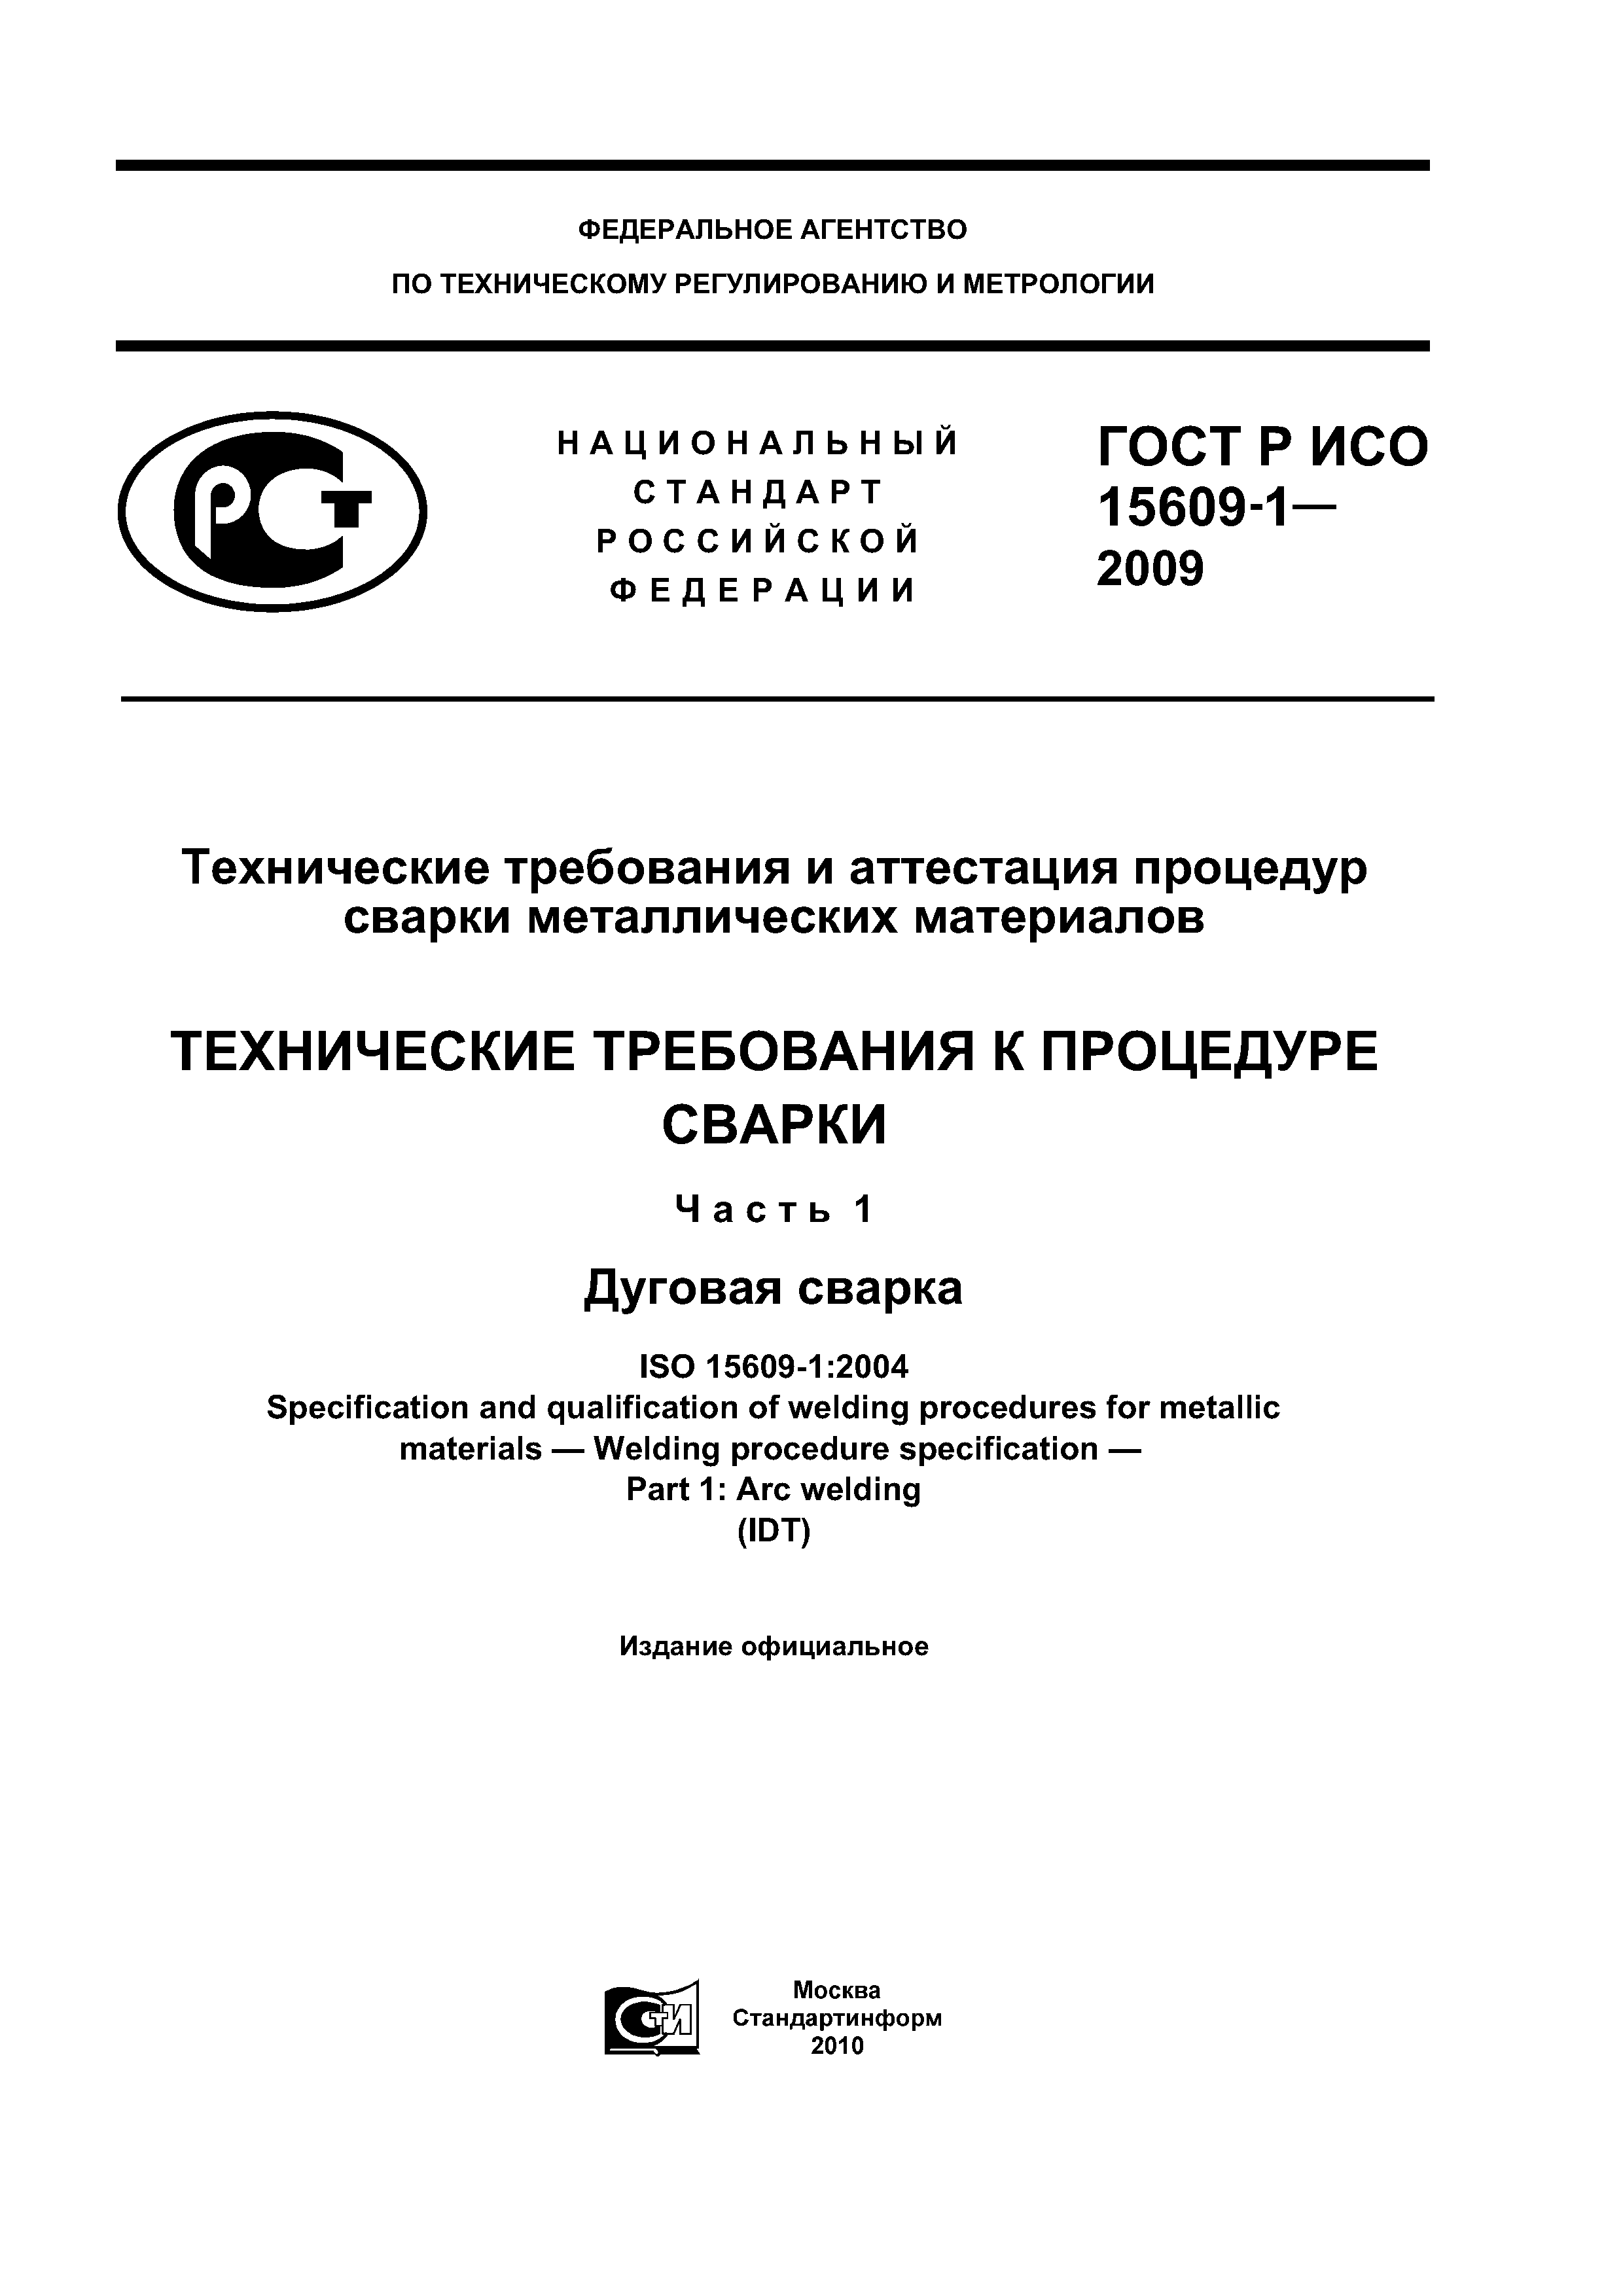 ГОСТ Р ИСО 15609-1-2009